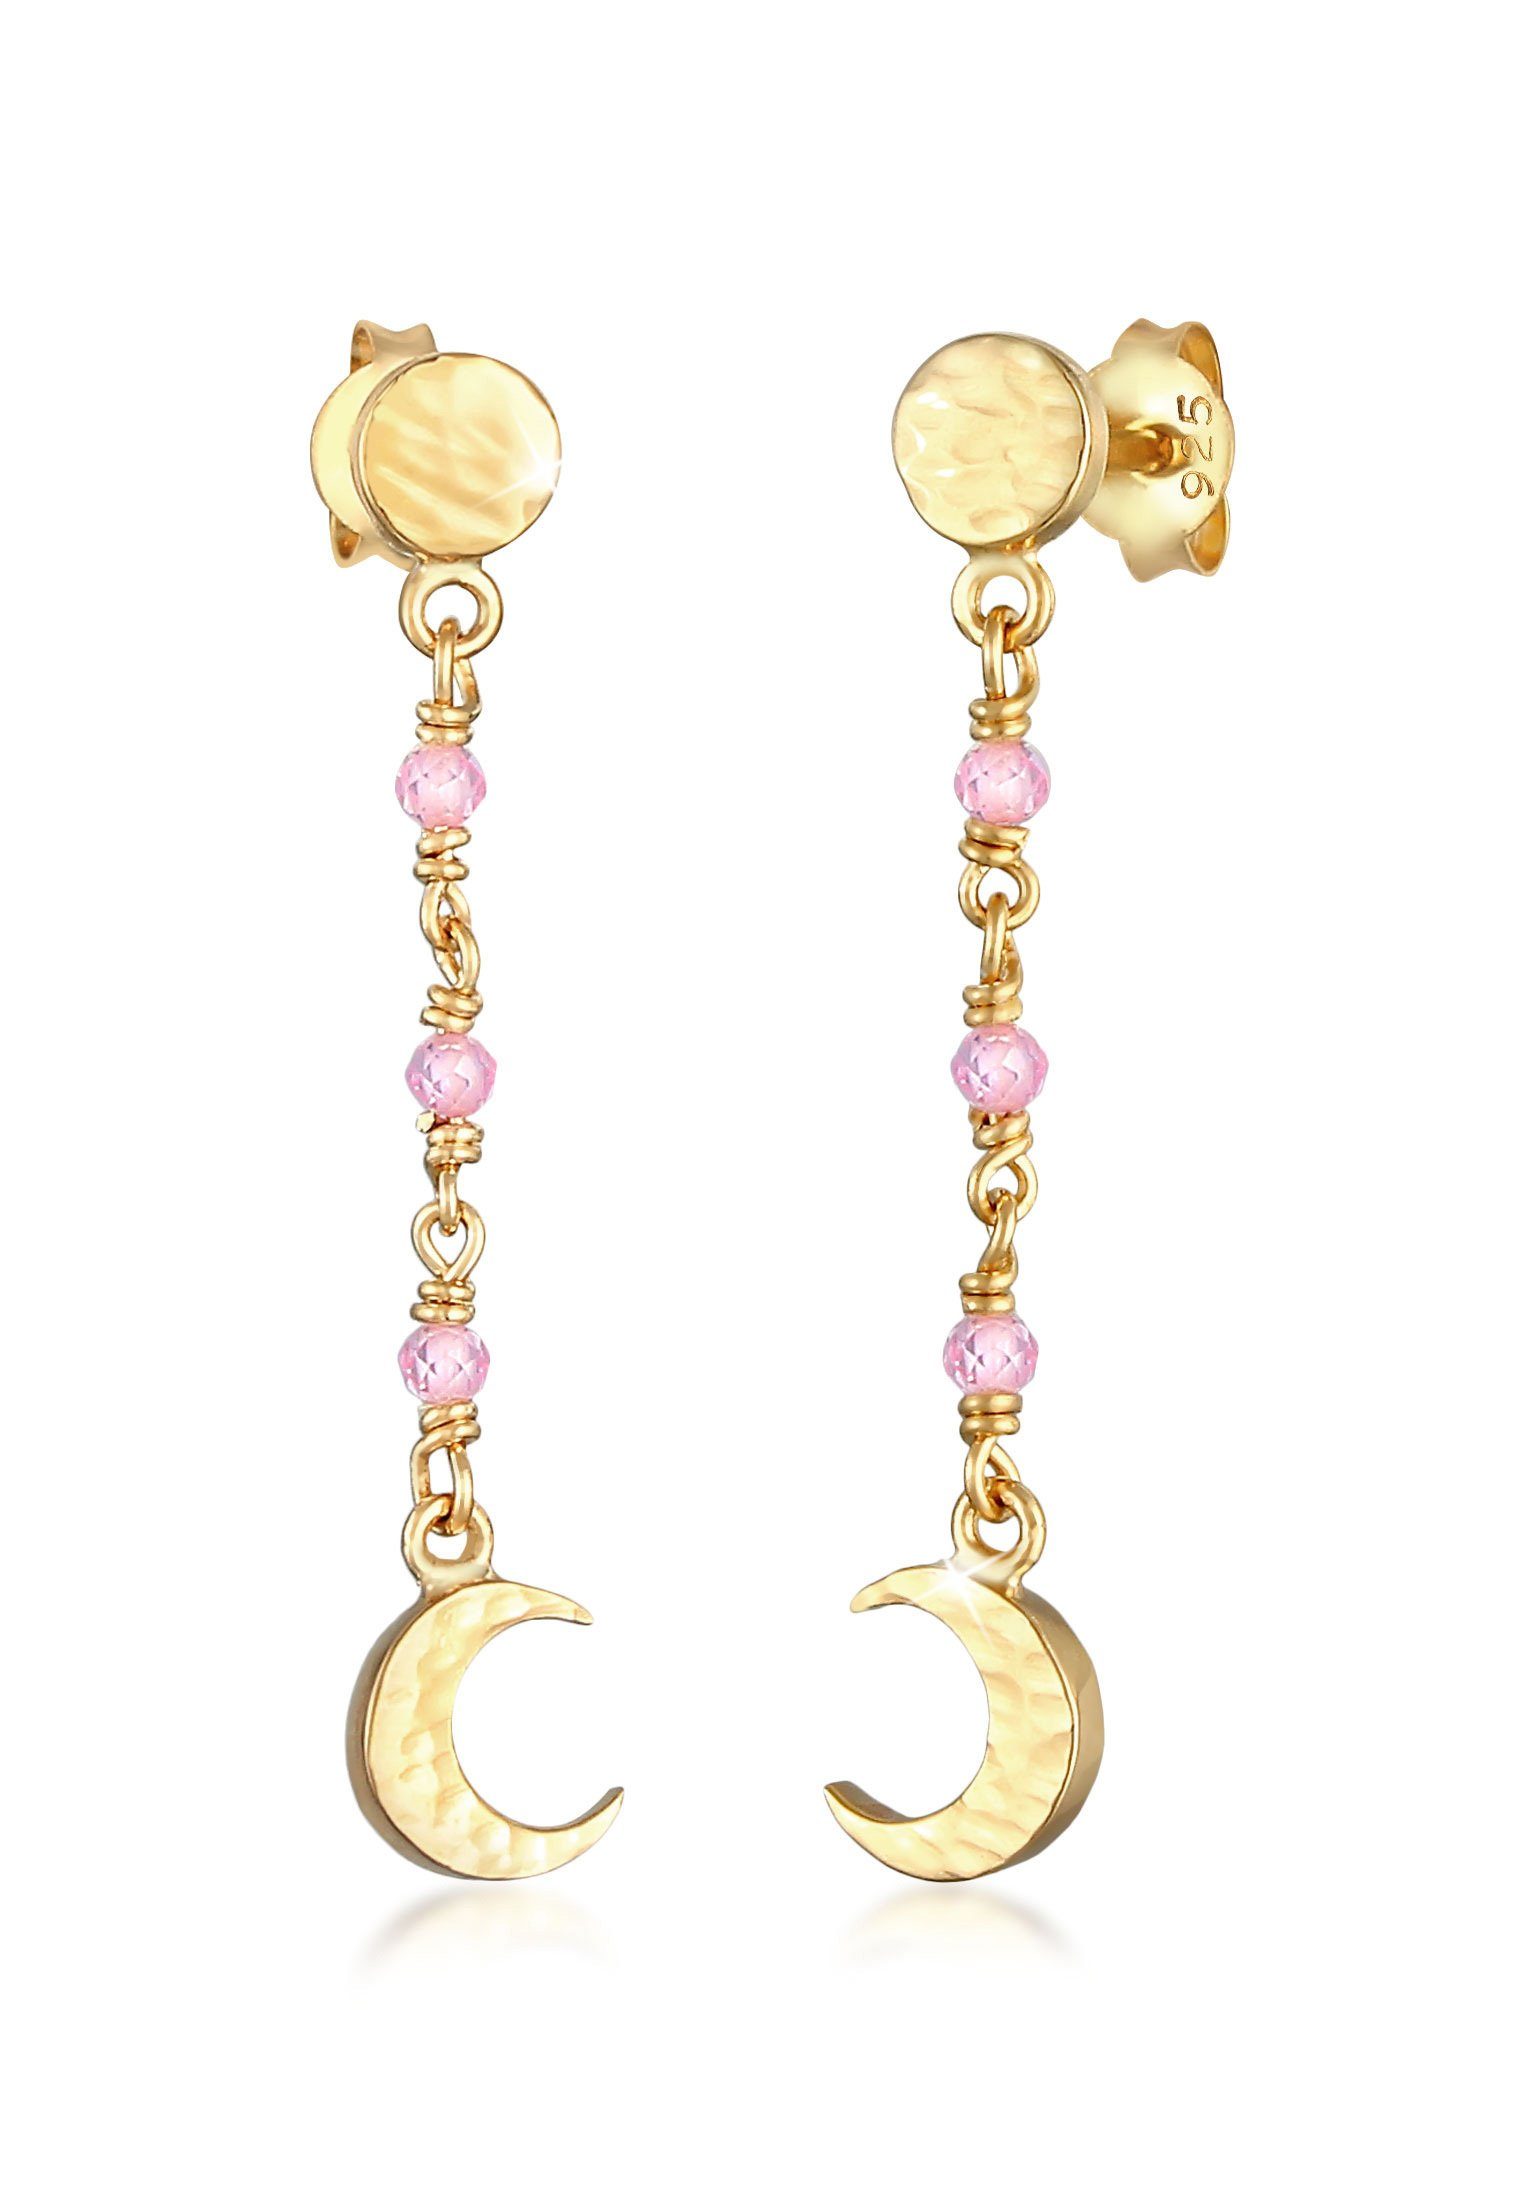 Elli Paar Ohrhänger Mond Plättchen Struktur Rosa Quarz 925 Silber, Astro, Halbmond Gold